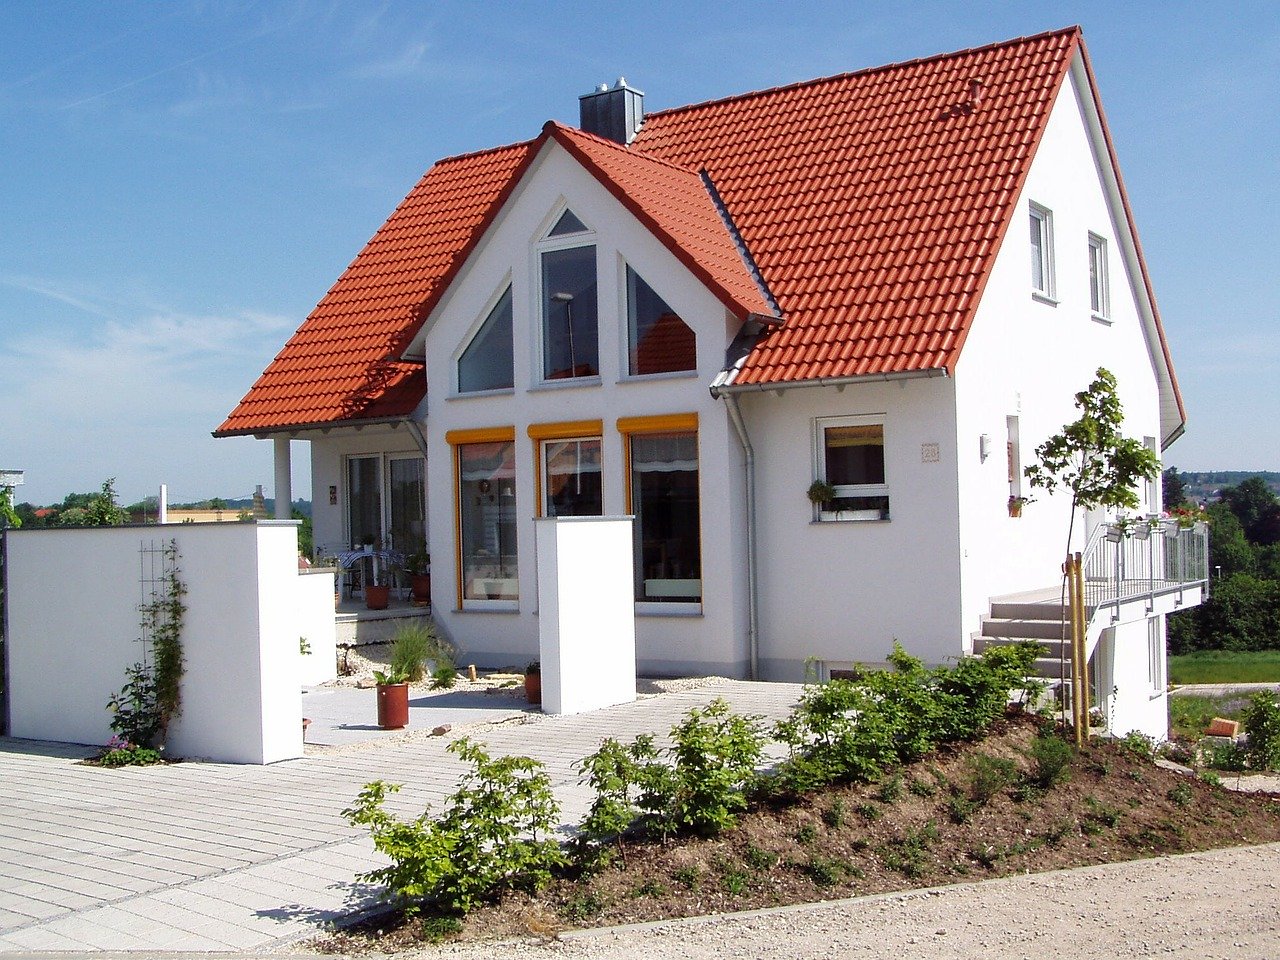 
                               Häuser als Einfamilienhaus gehören zu den Klassikern bei Schwabenhaus. 
                              